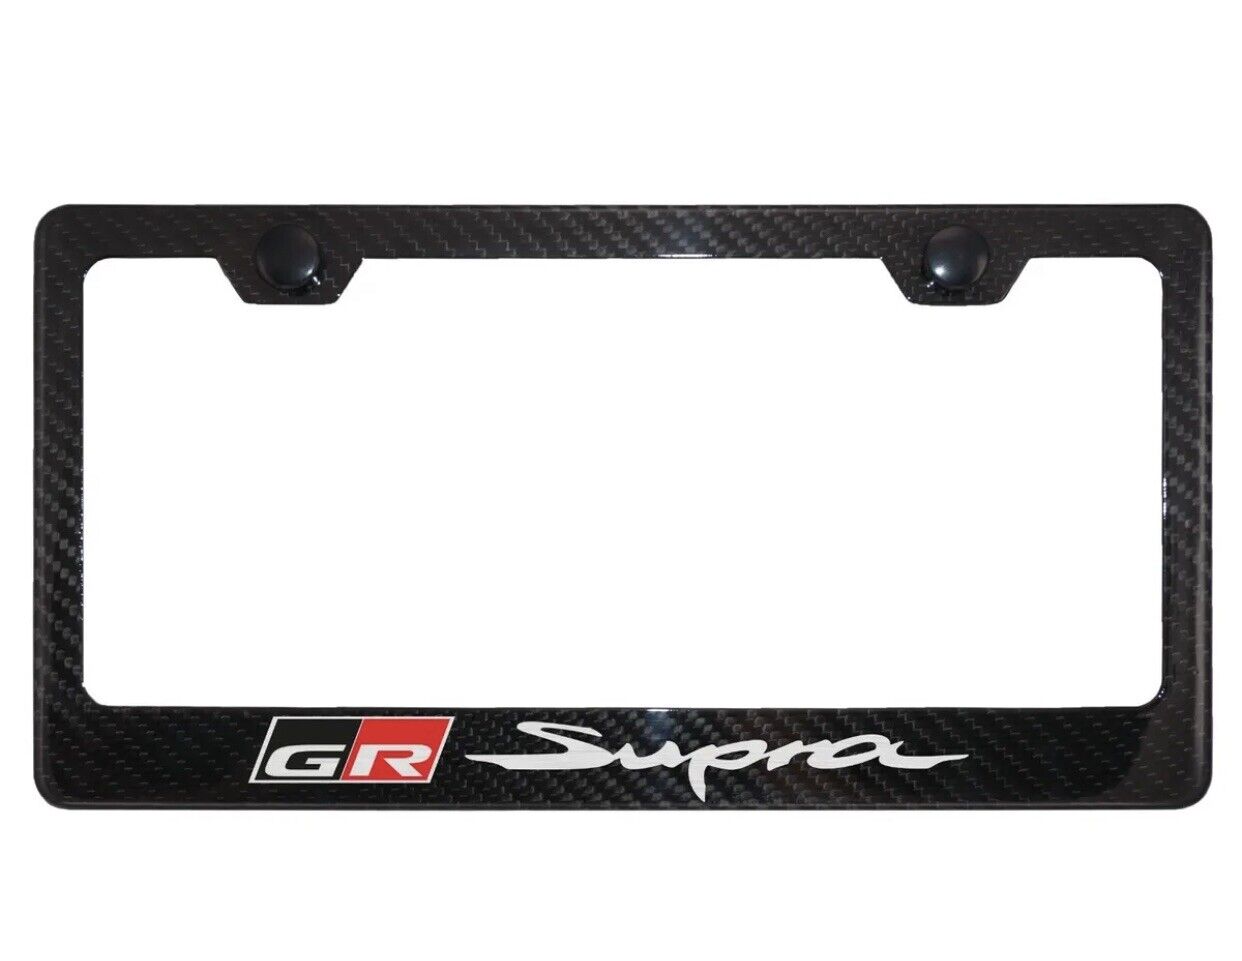 Toyota GR Supra Carbon Fiber License Plate Frame